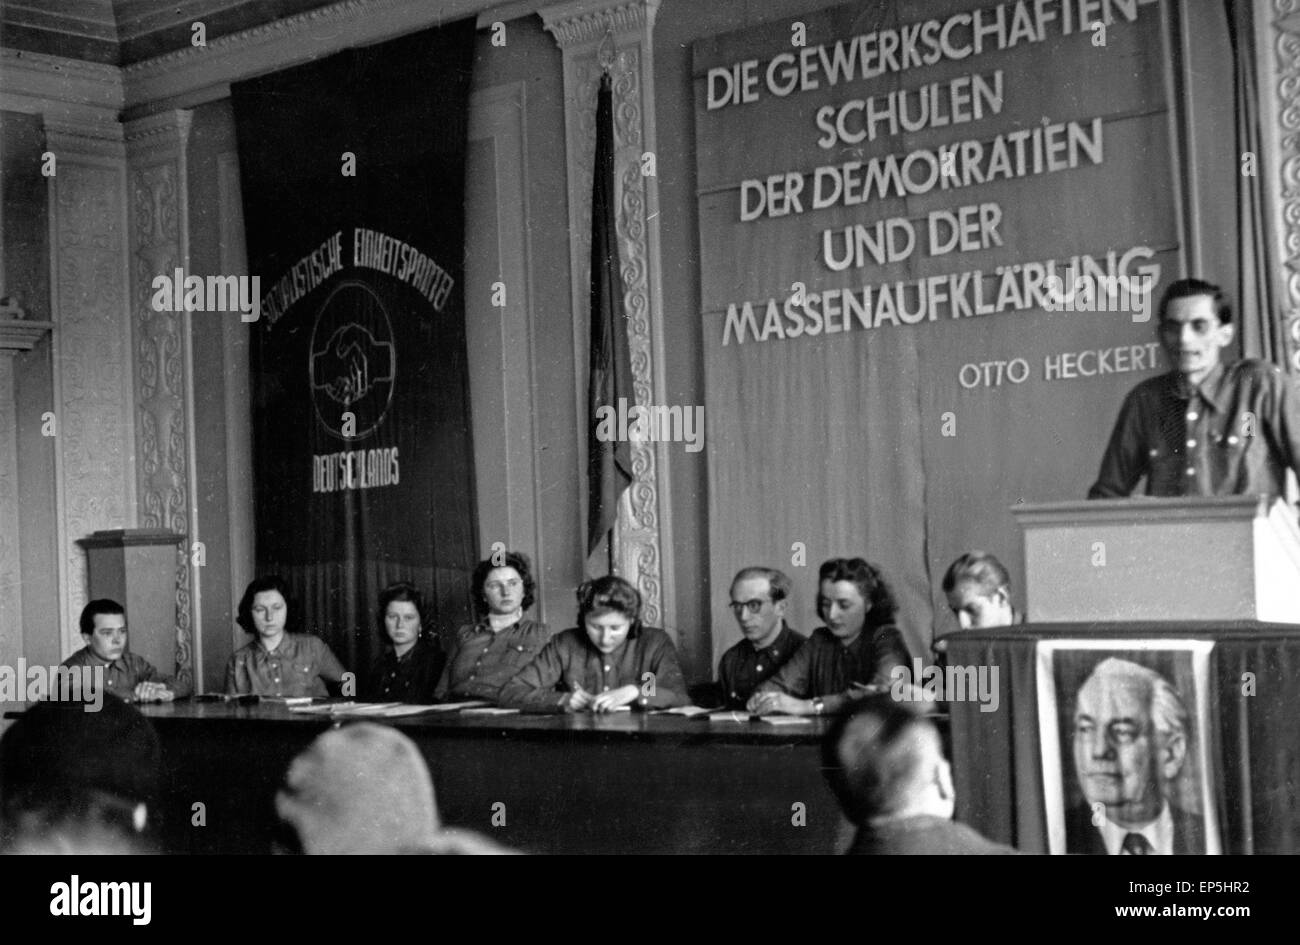 Gewerkschaftsfunktionär bei einem Vortrag, DDR 1950er Jahre. Unione del lavoro ufficiale di erogare un discorso, RDT 1950s. Foto Stock